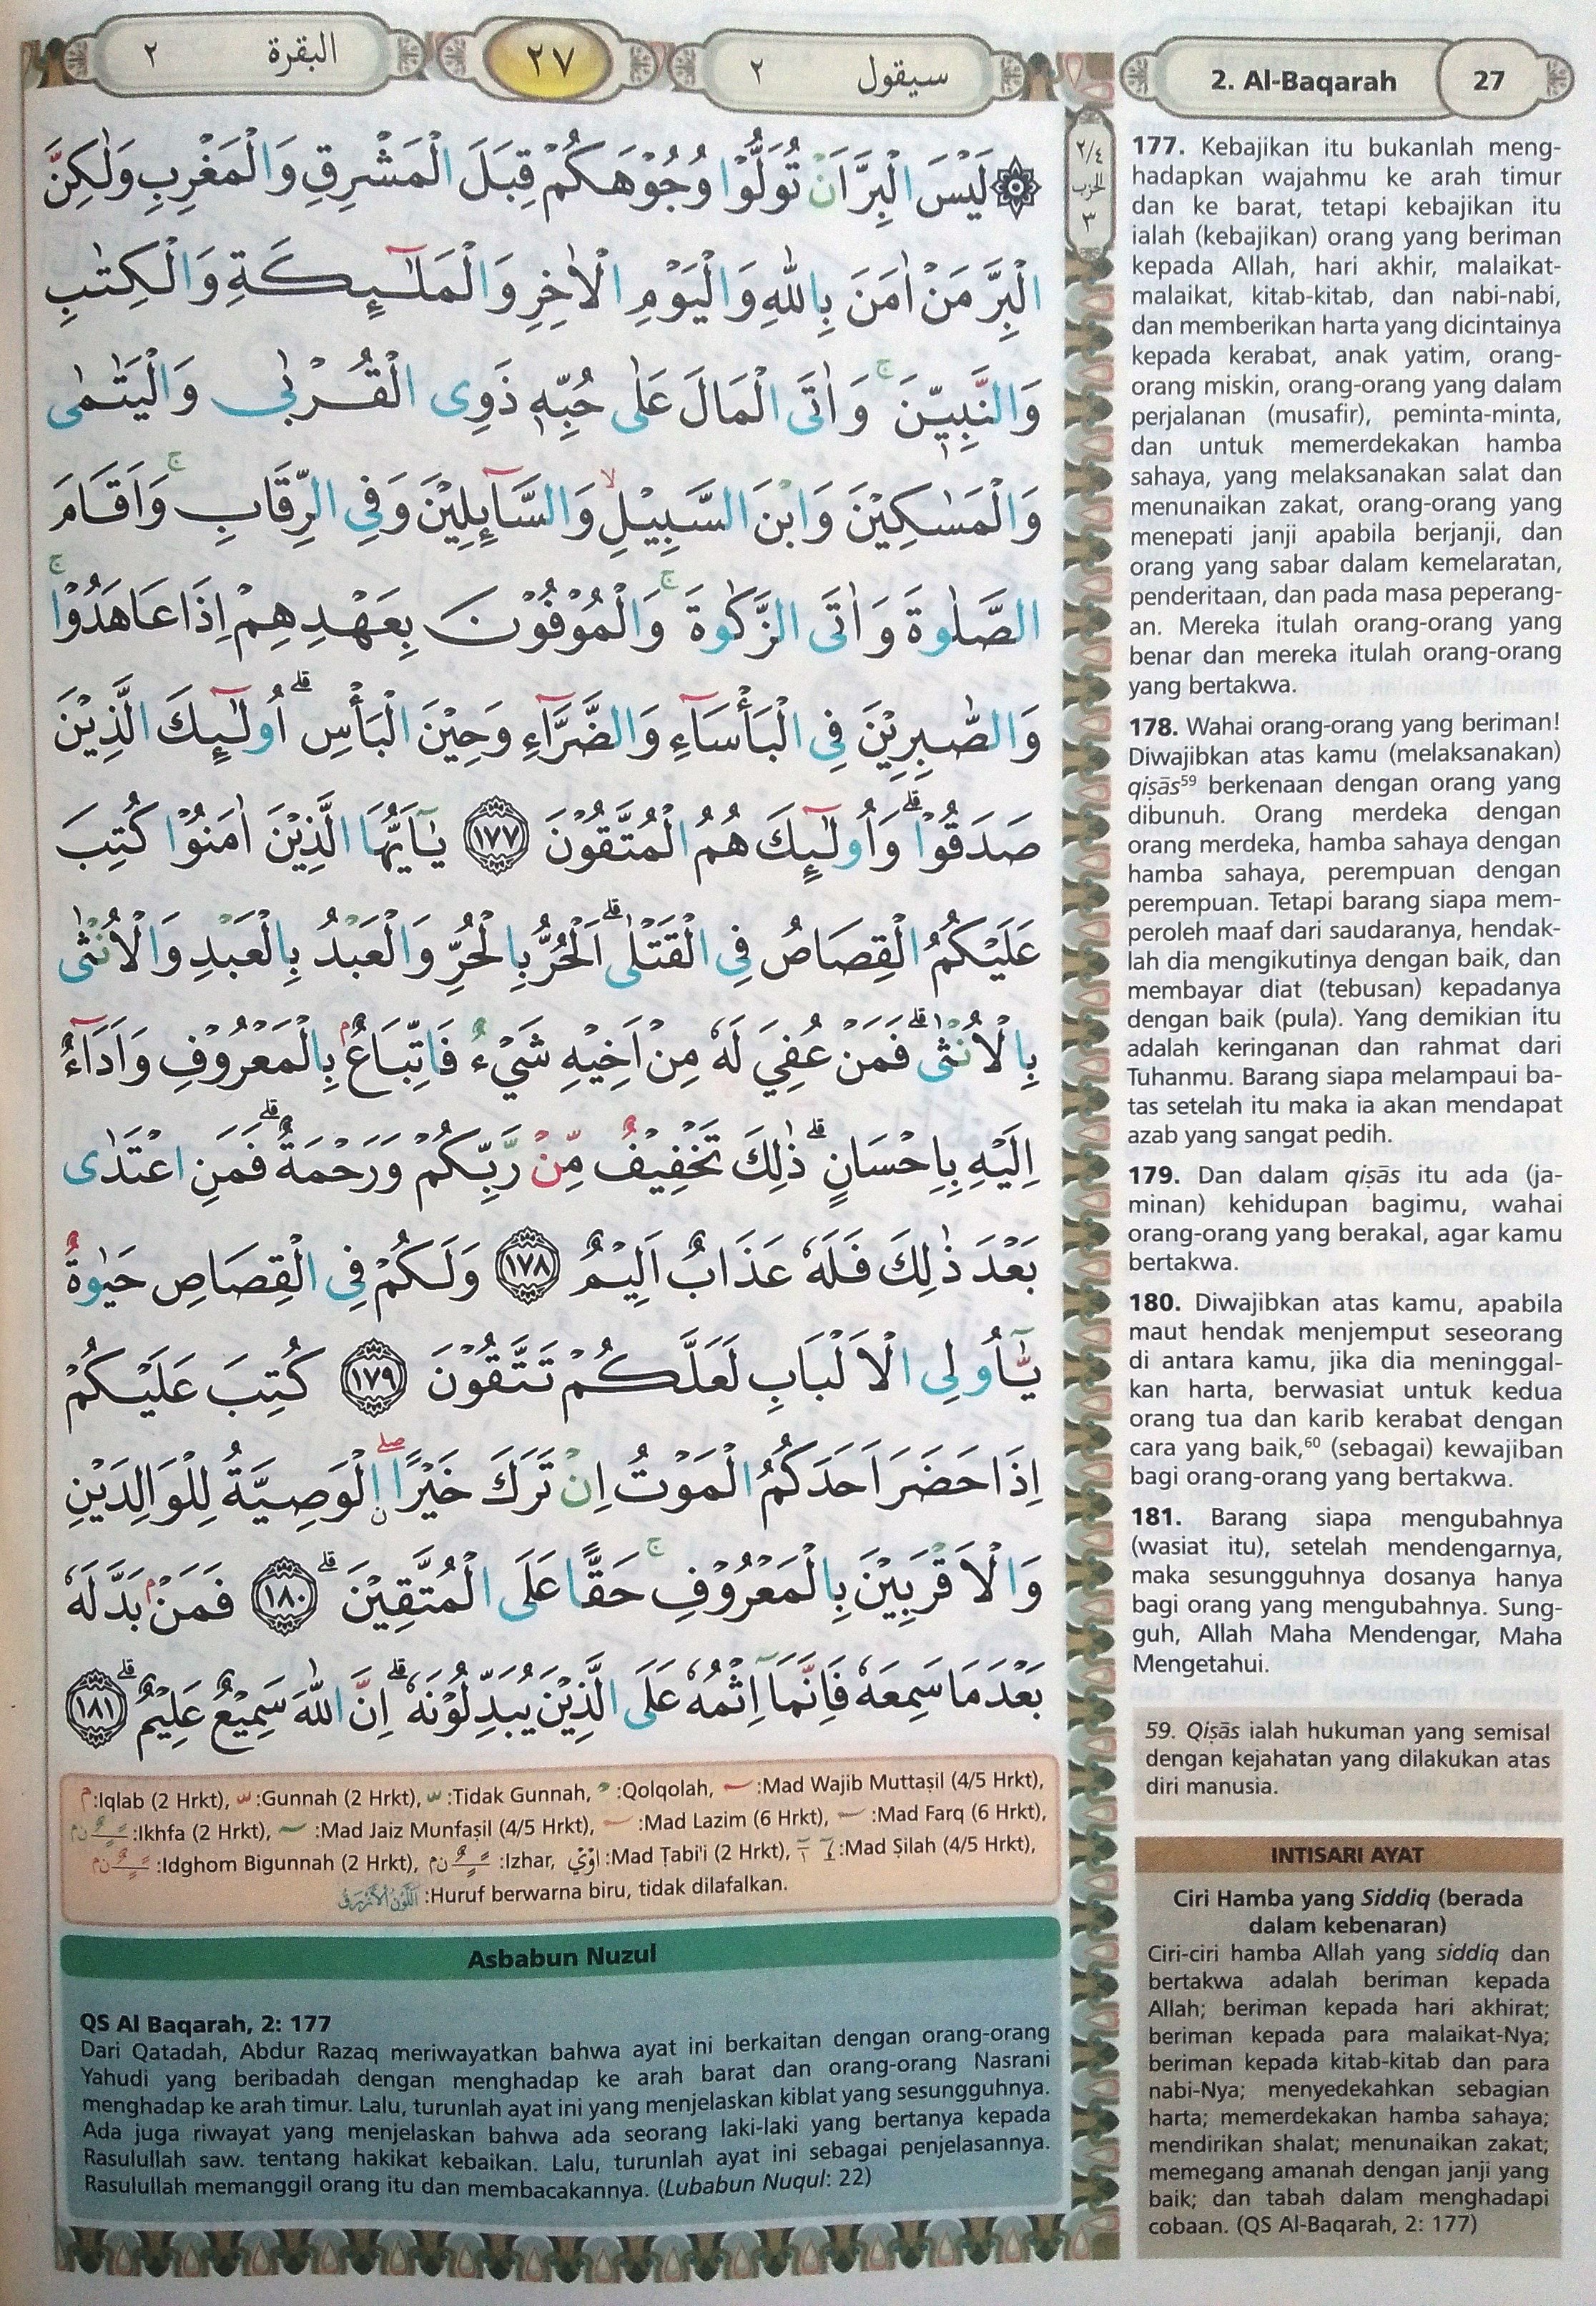 Al Baqarah ayat 177-181